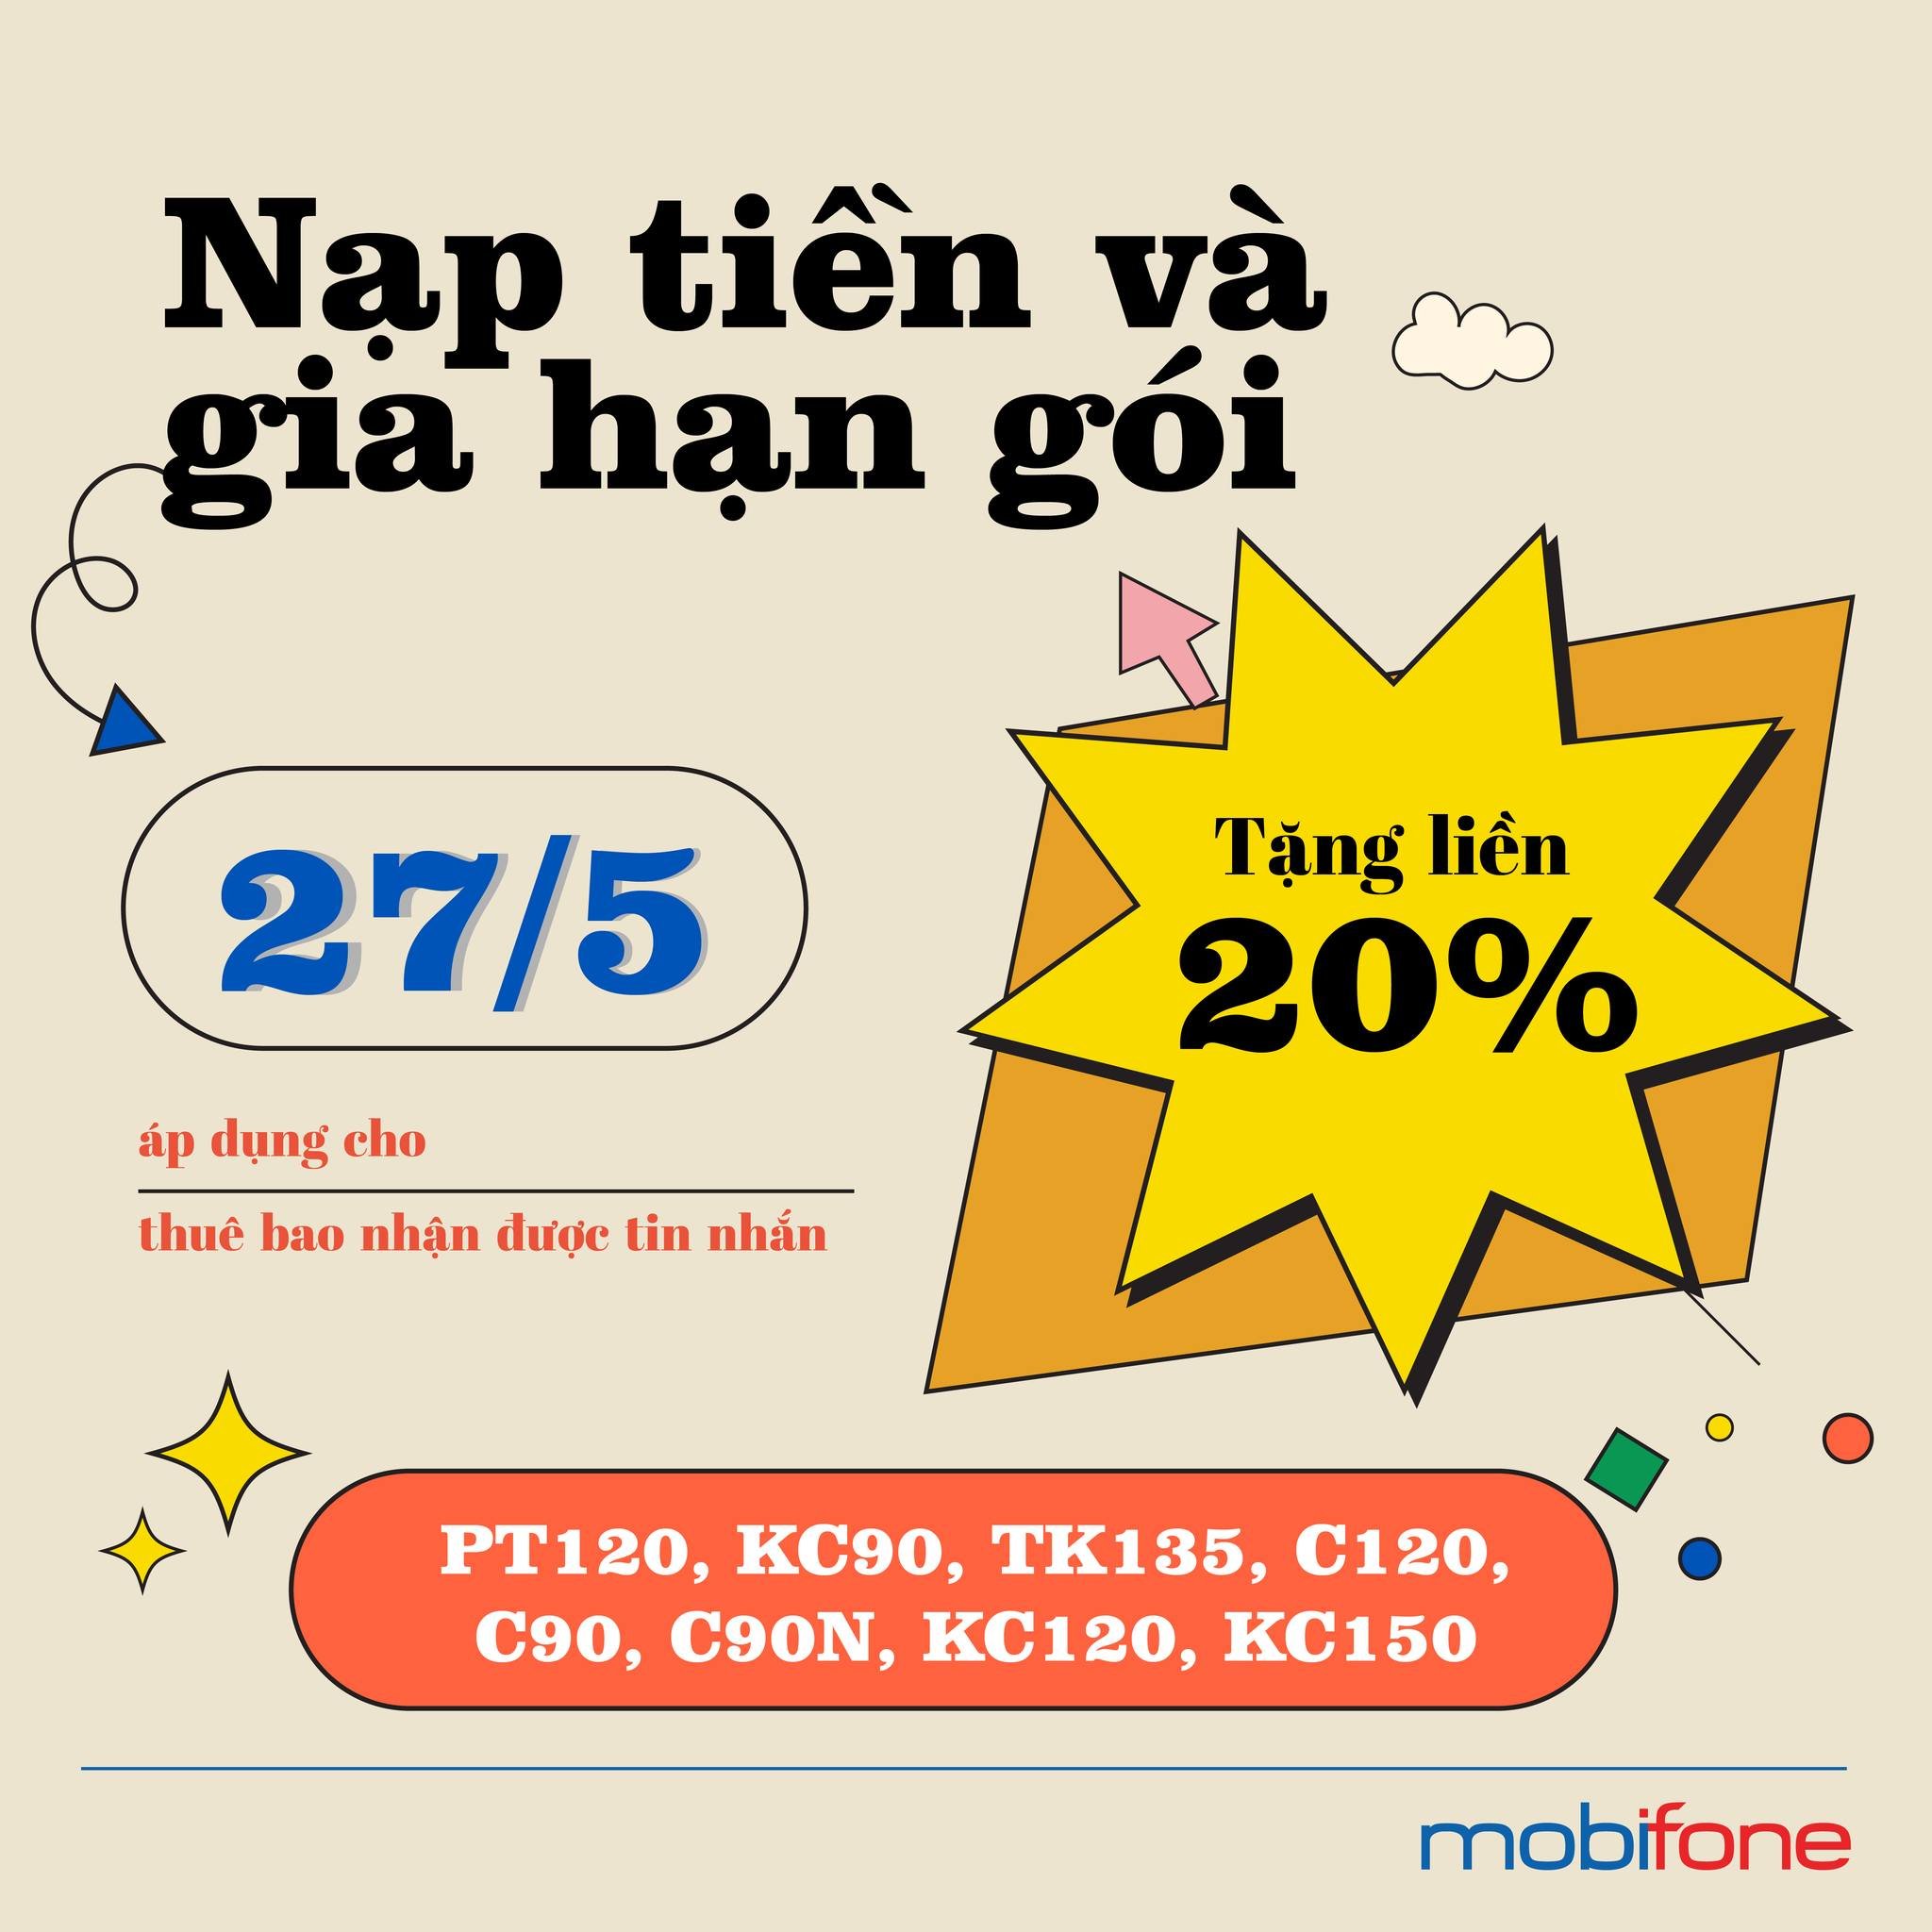 MobiFone khuyến mãi 20% nạp tiền trả trước trong ngày 27.05